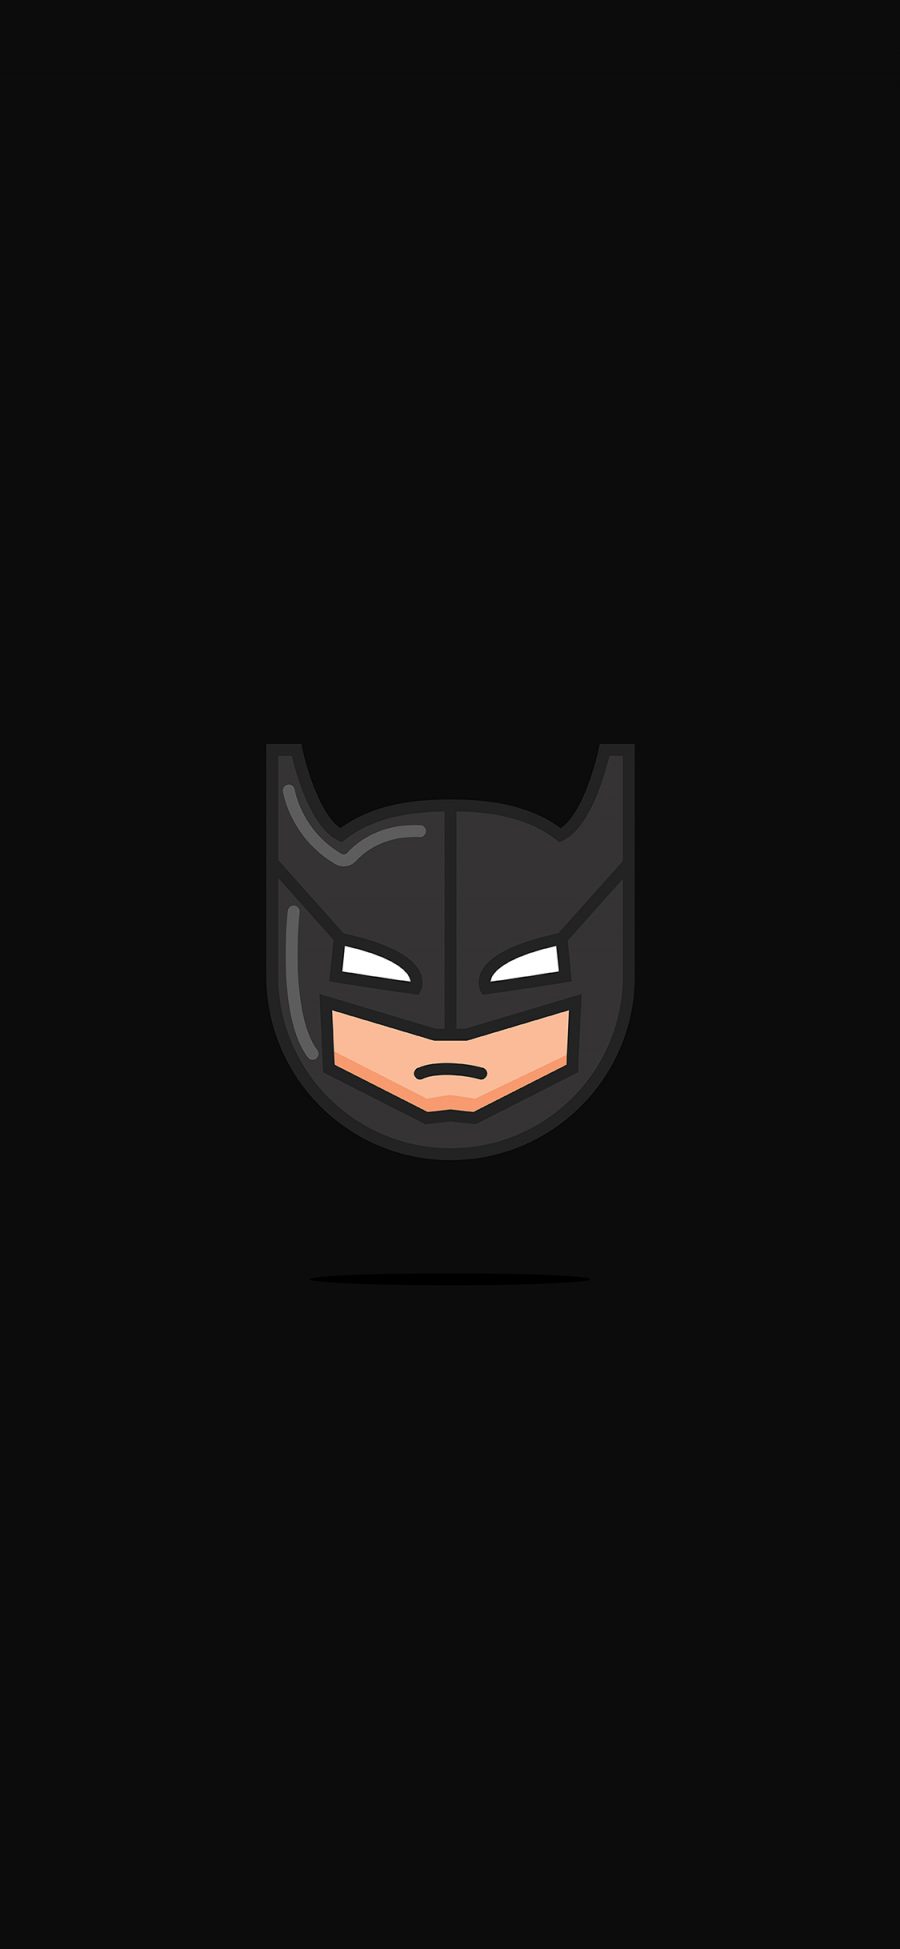 [2436×1125]蝙蝠侠 漫威 超级英雄 Q版 头像 苹果手机动漫壁纸图片